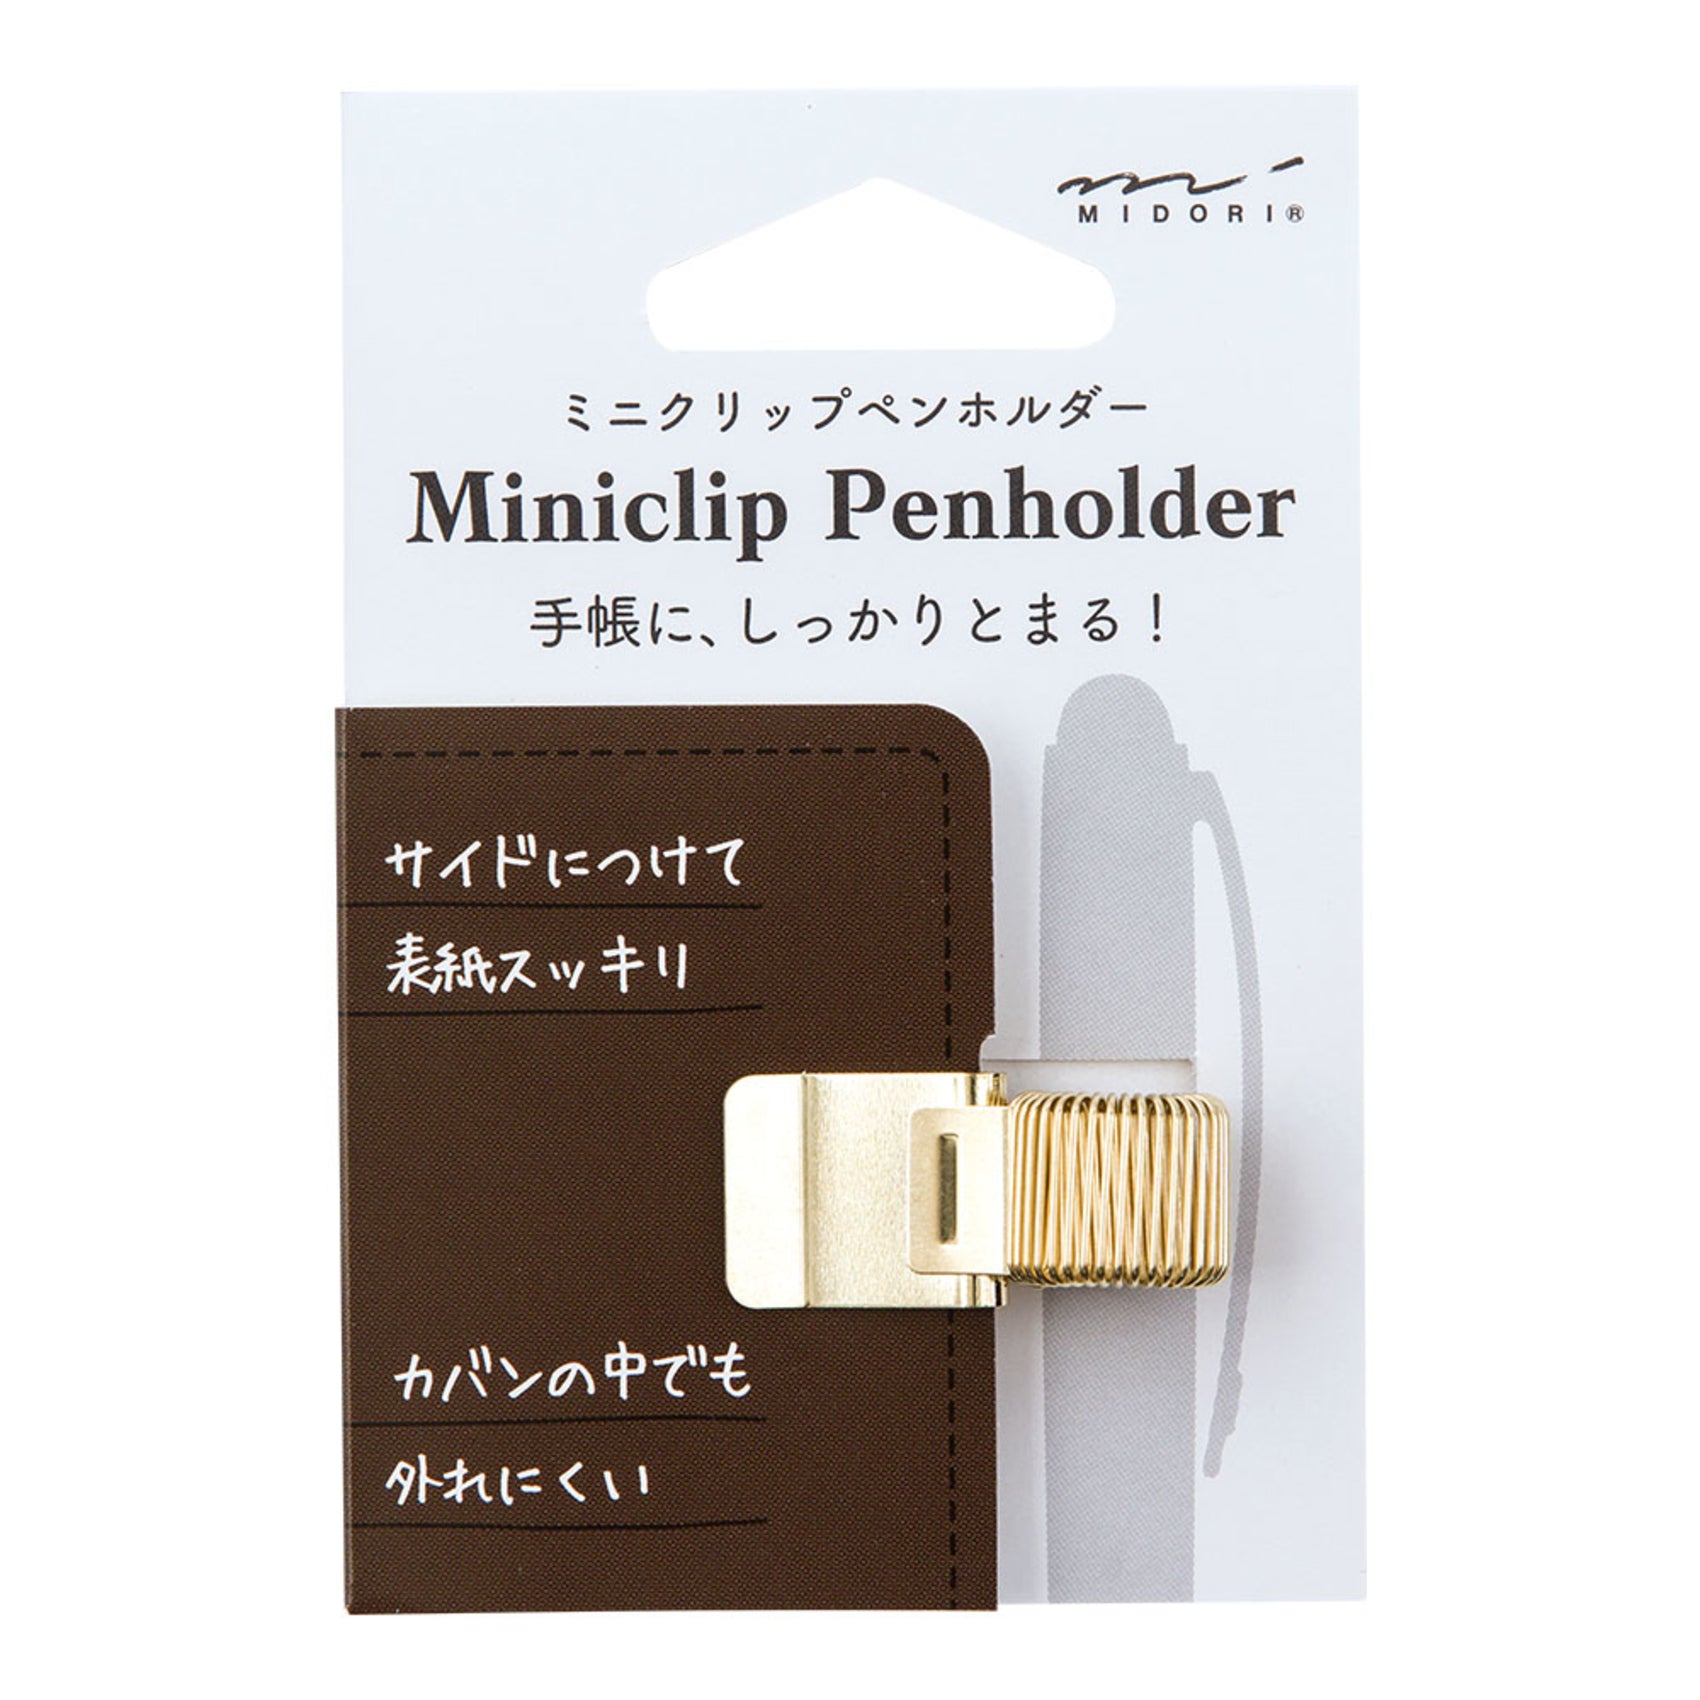 Midori Mini Clip Pen Holder - Gold